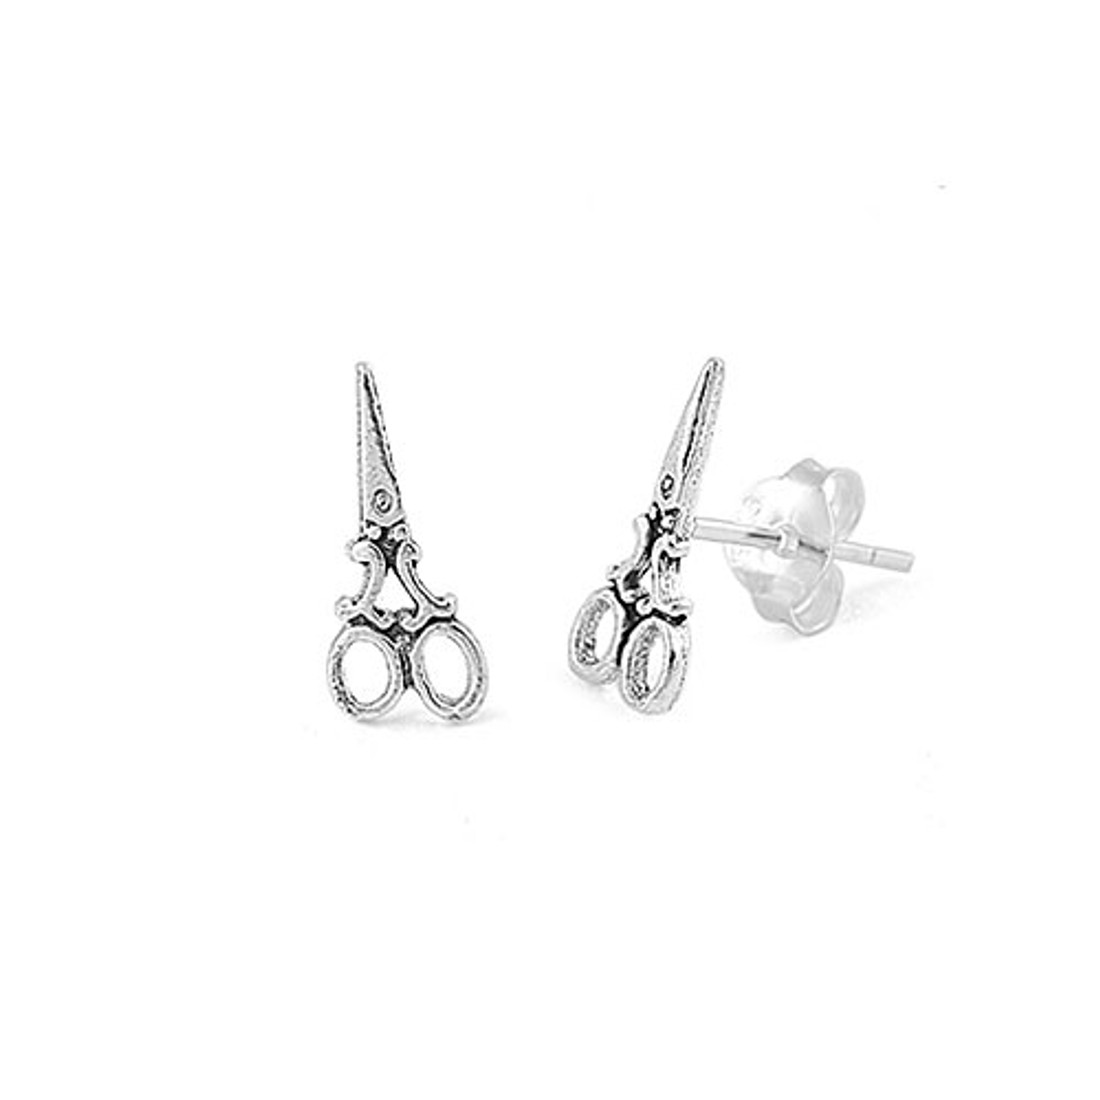 Sterling silver scissors stud earrings. 